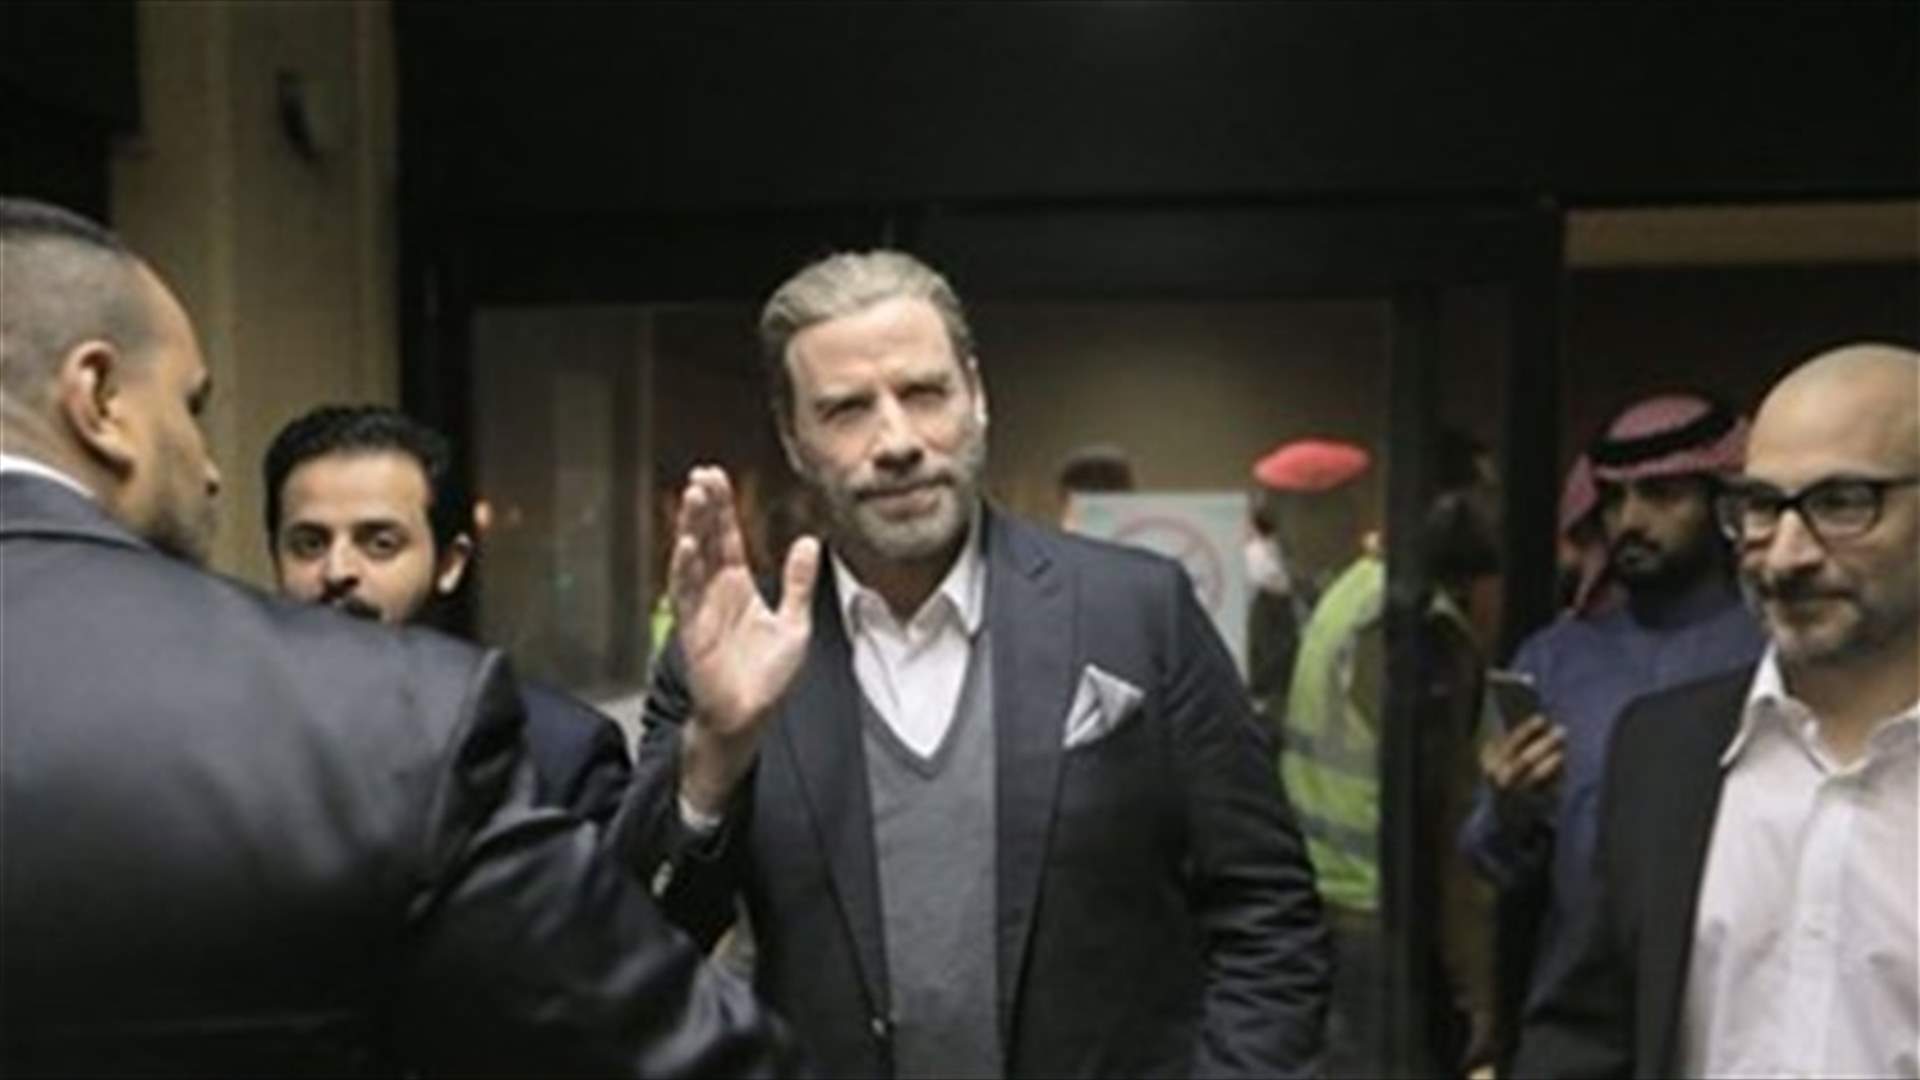 Actor John Travolta arrives in Saudi Arabia